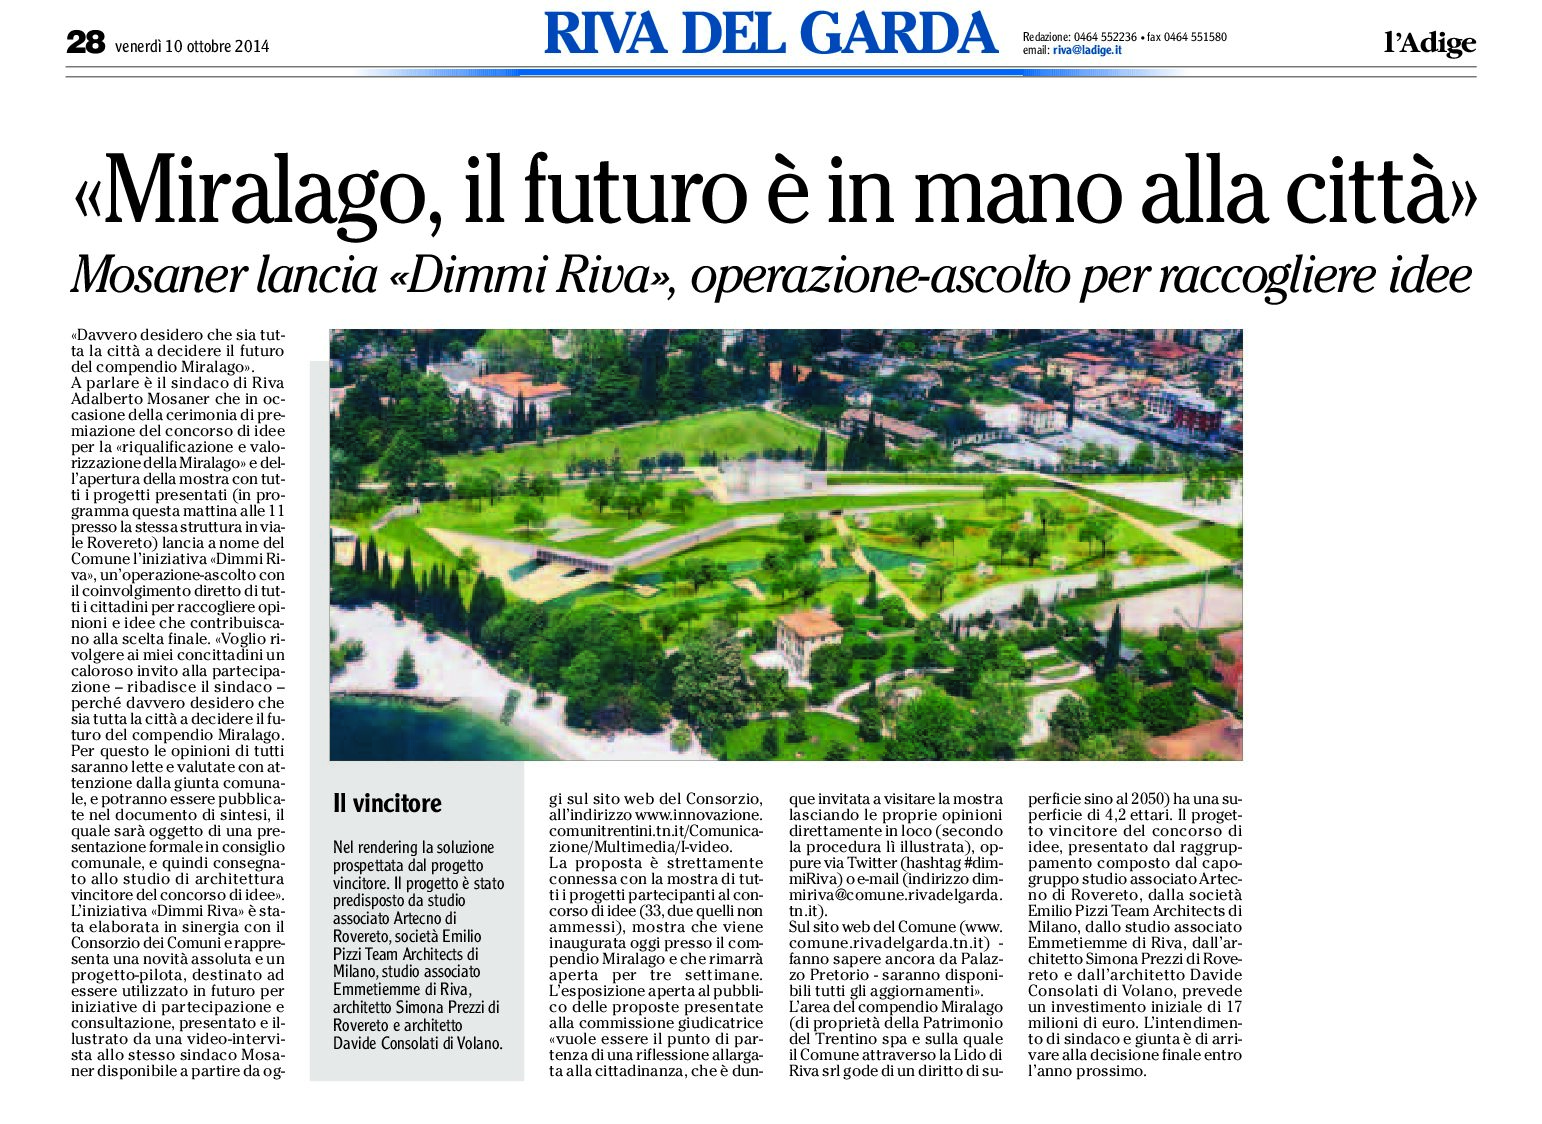 Riva, Miralago: il futuro è in mano alla città